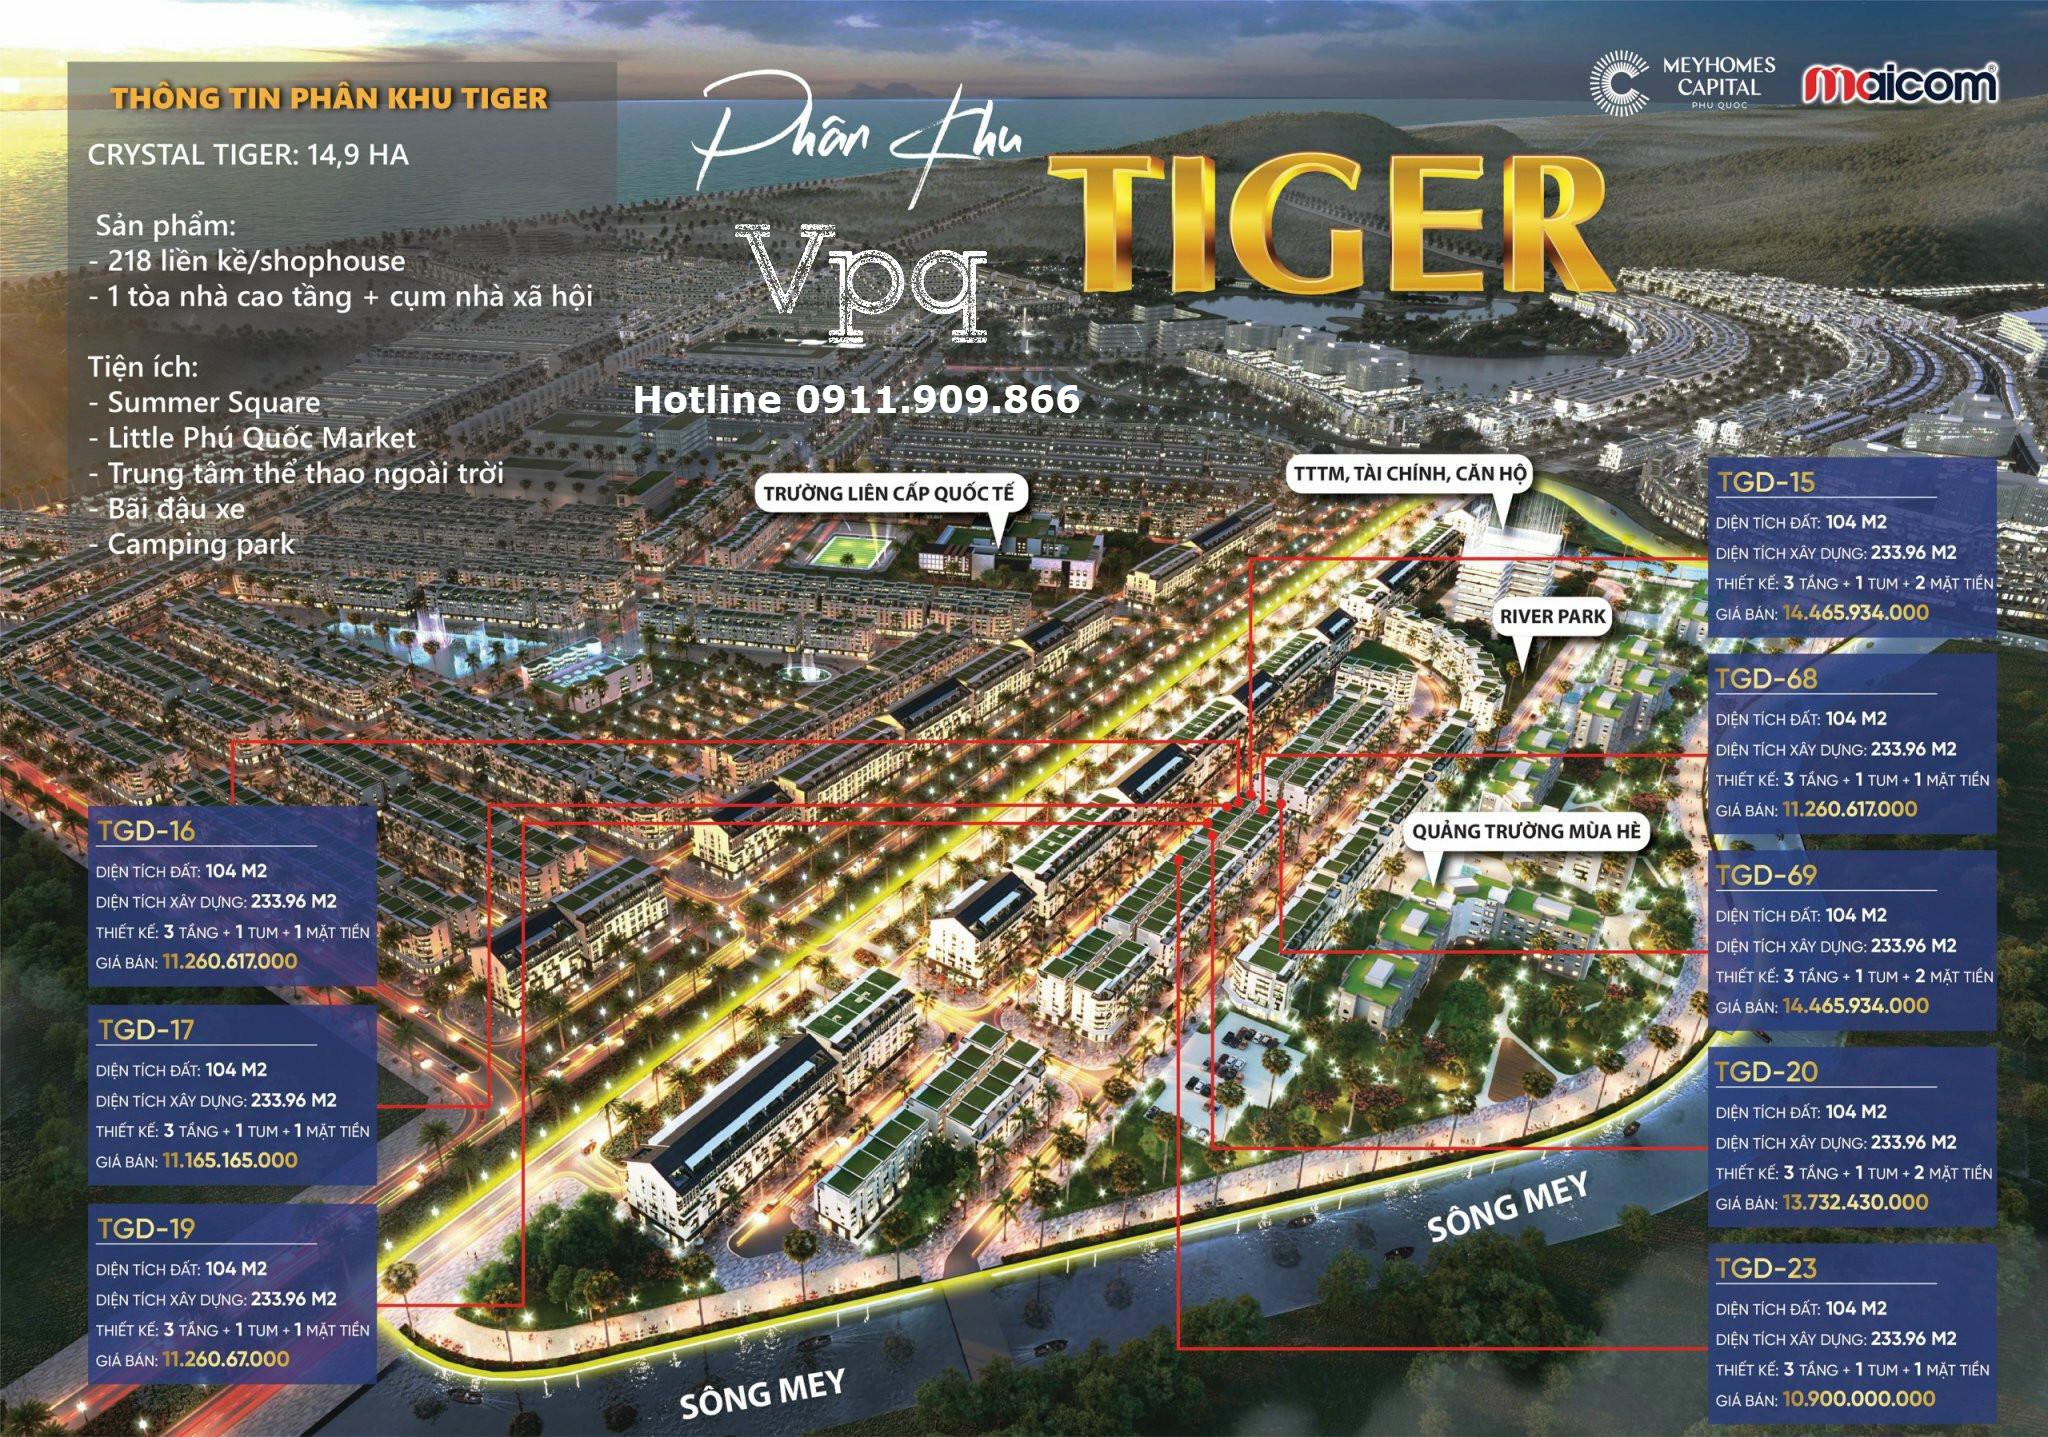 Bảng hàng phân khu Tiger trên phối cảnh dự án